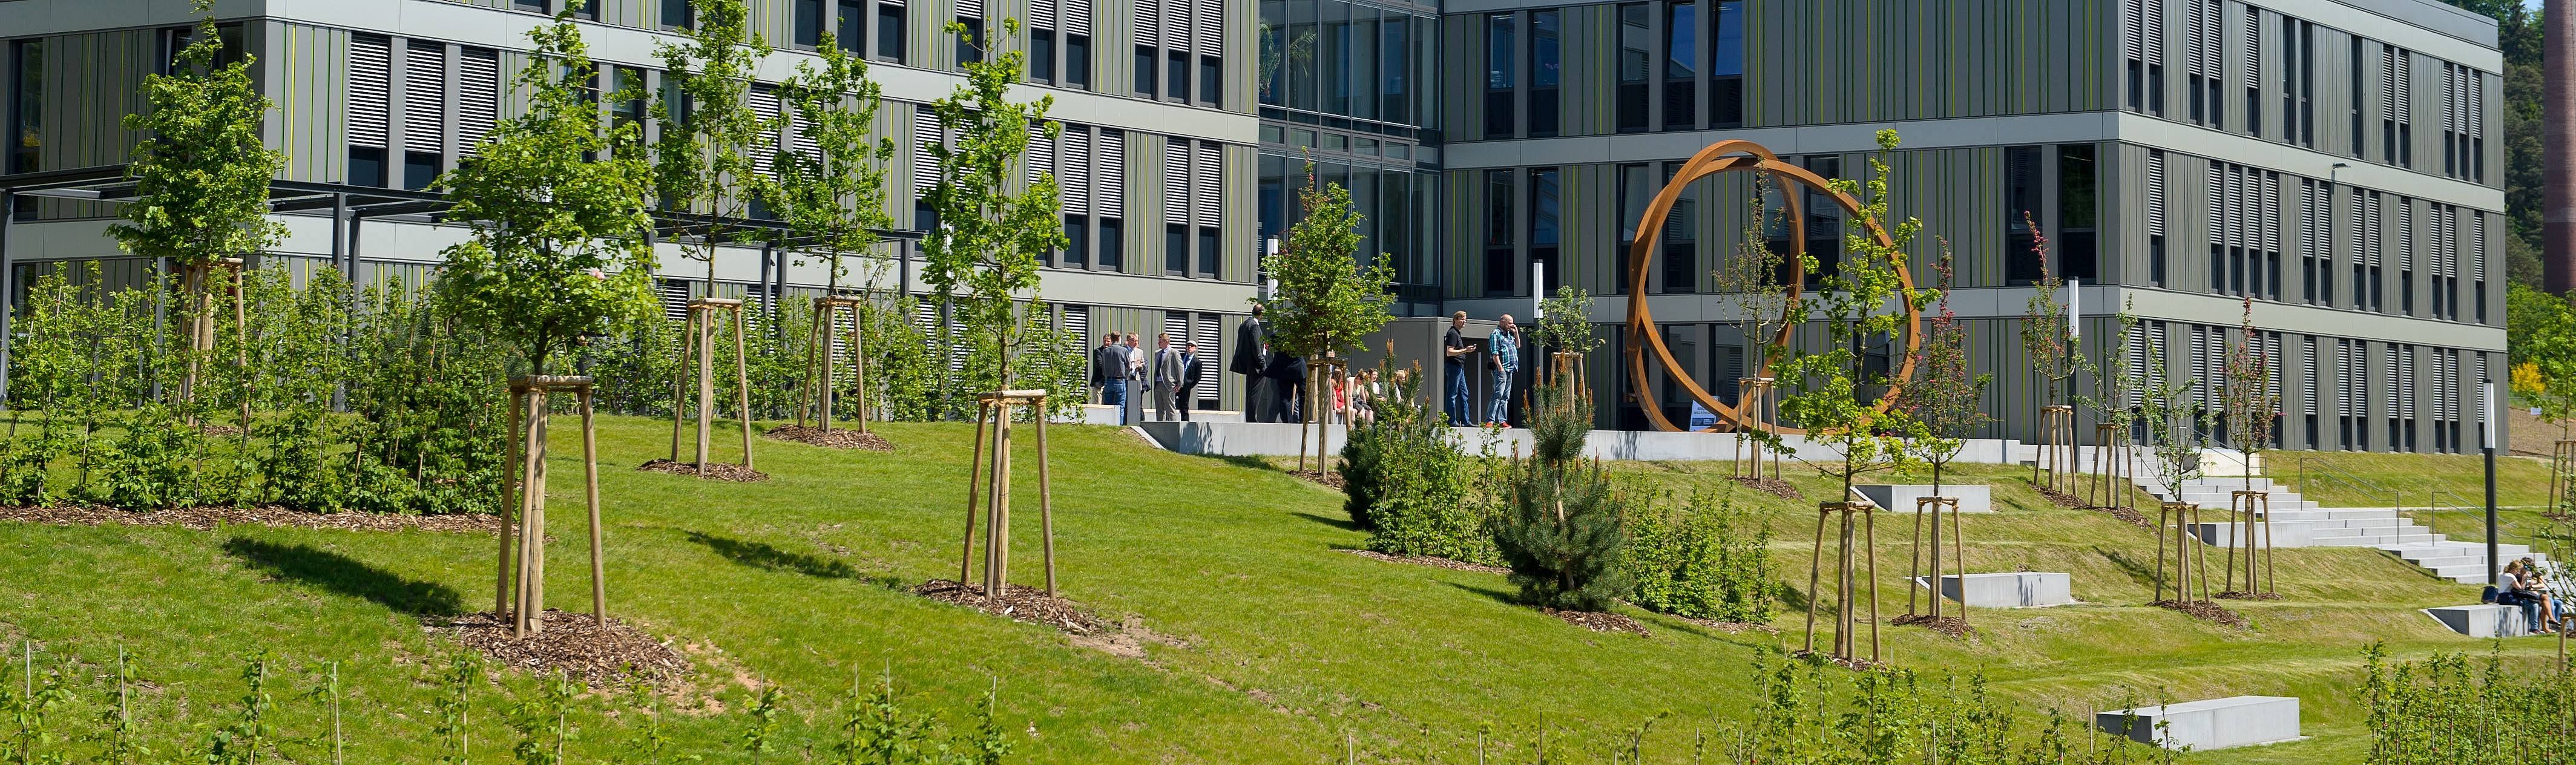 Ein Universitätsgebäude mit einer grünen Rasenfläche und neu gepflanzten Bäumen